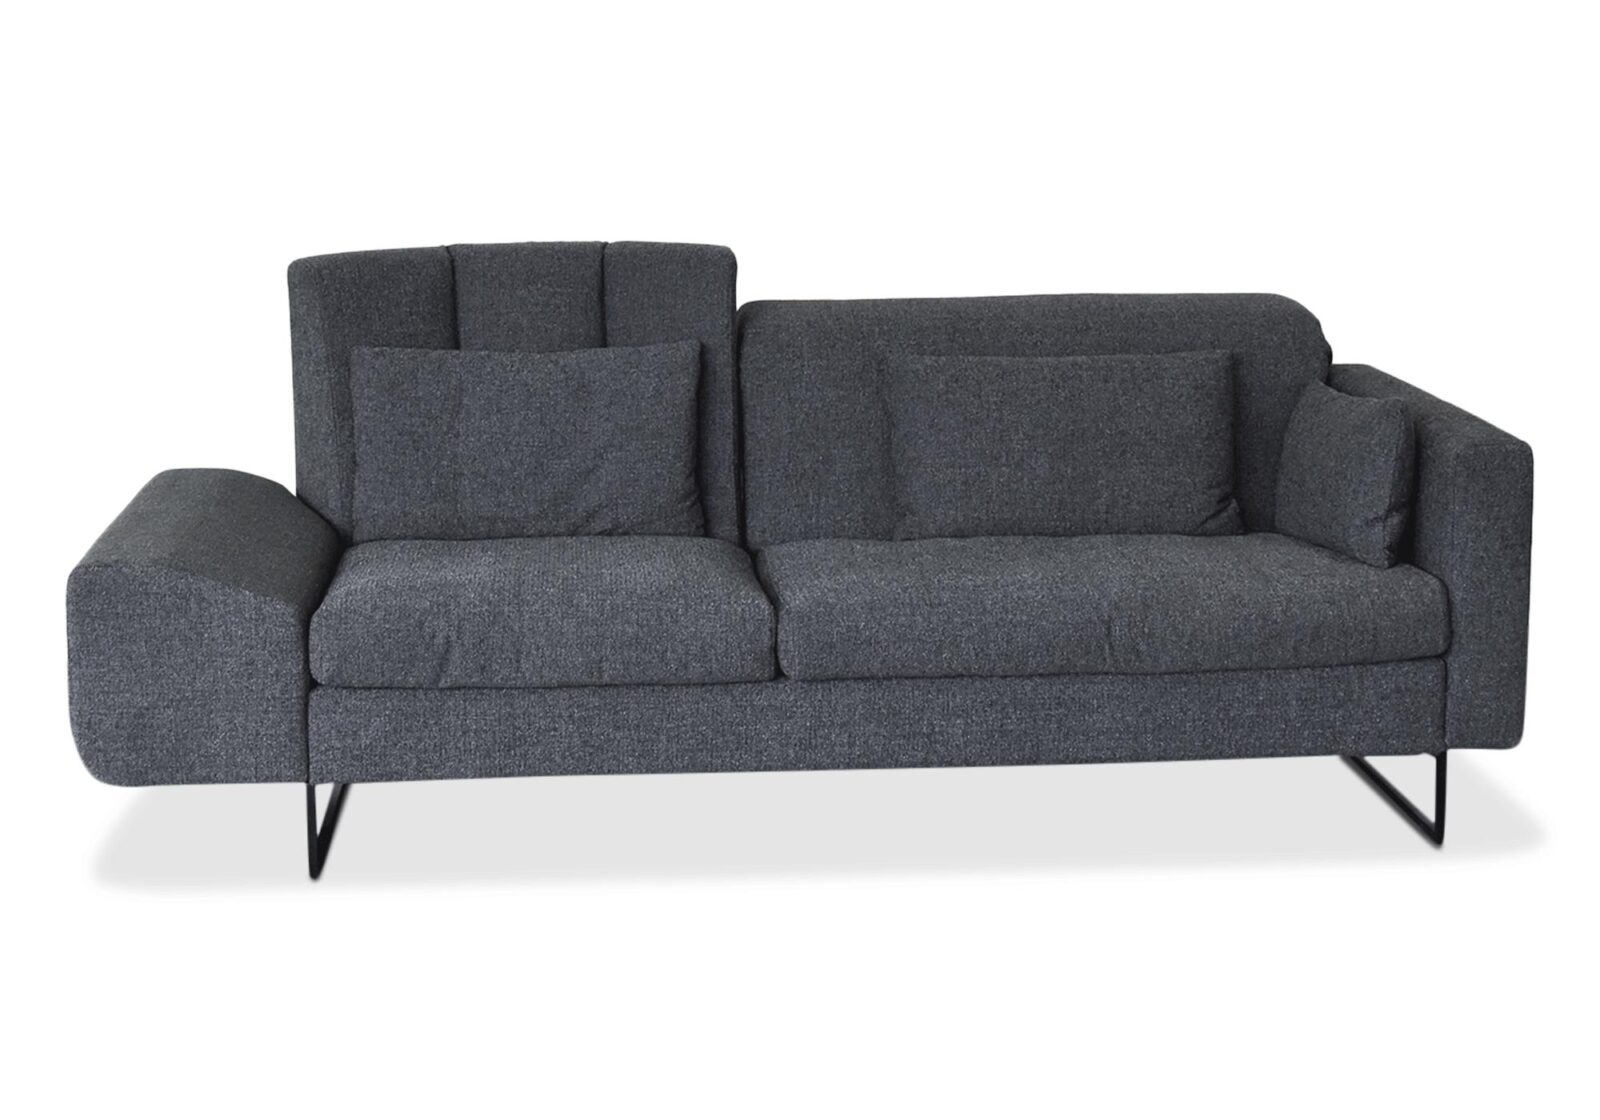 3er Sofa Embrace Brühl  höhenverstellbar. Bezug: Stoff. Farbe: Graphit. Erhältlich bei Möbel Gallati.